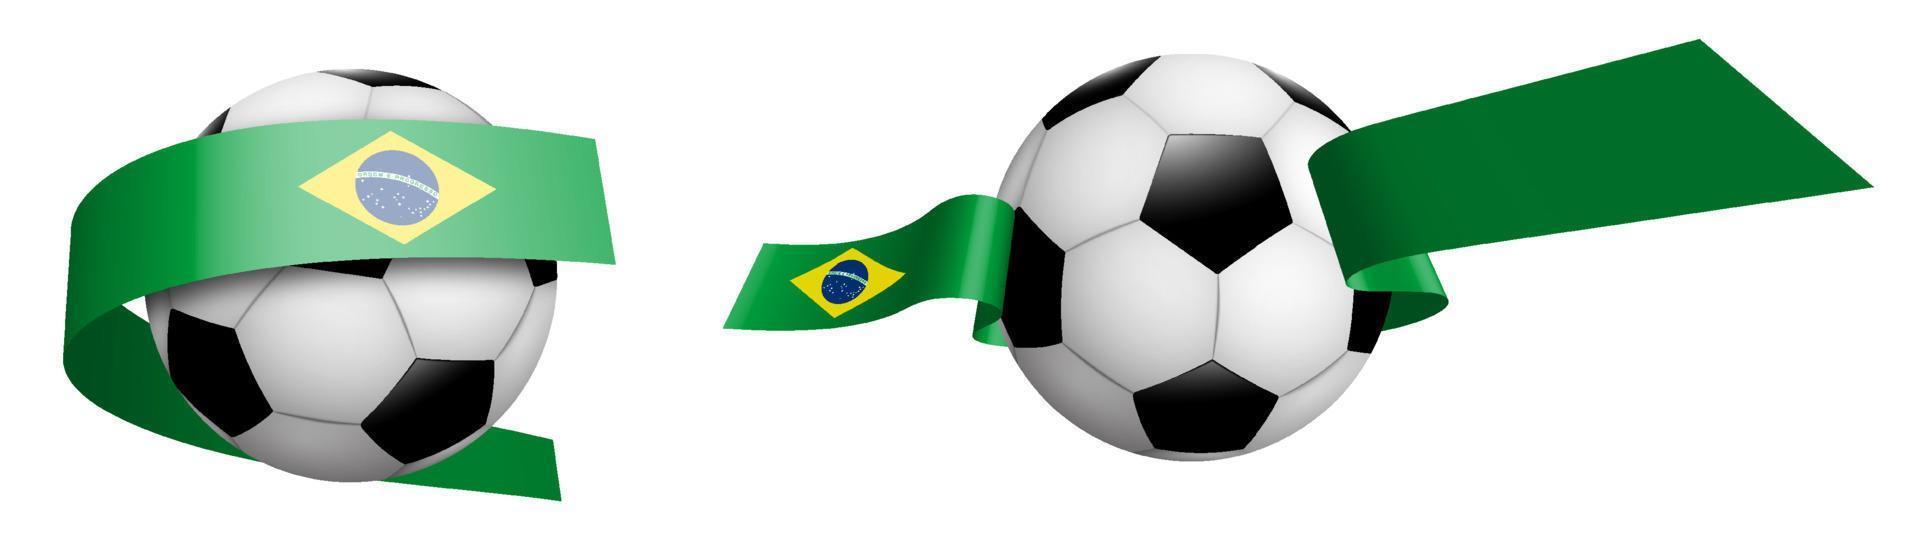 pelotas de fútbol, fútbol clásico en cintas con bandera de colores de la república de brasil. elemento de diseño para competiciones de fútbol. vector aislado sobre fondo blanco